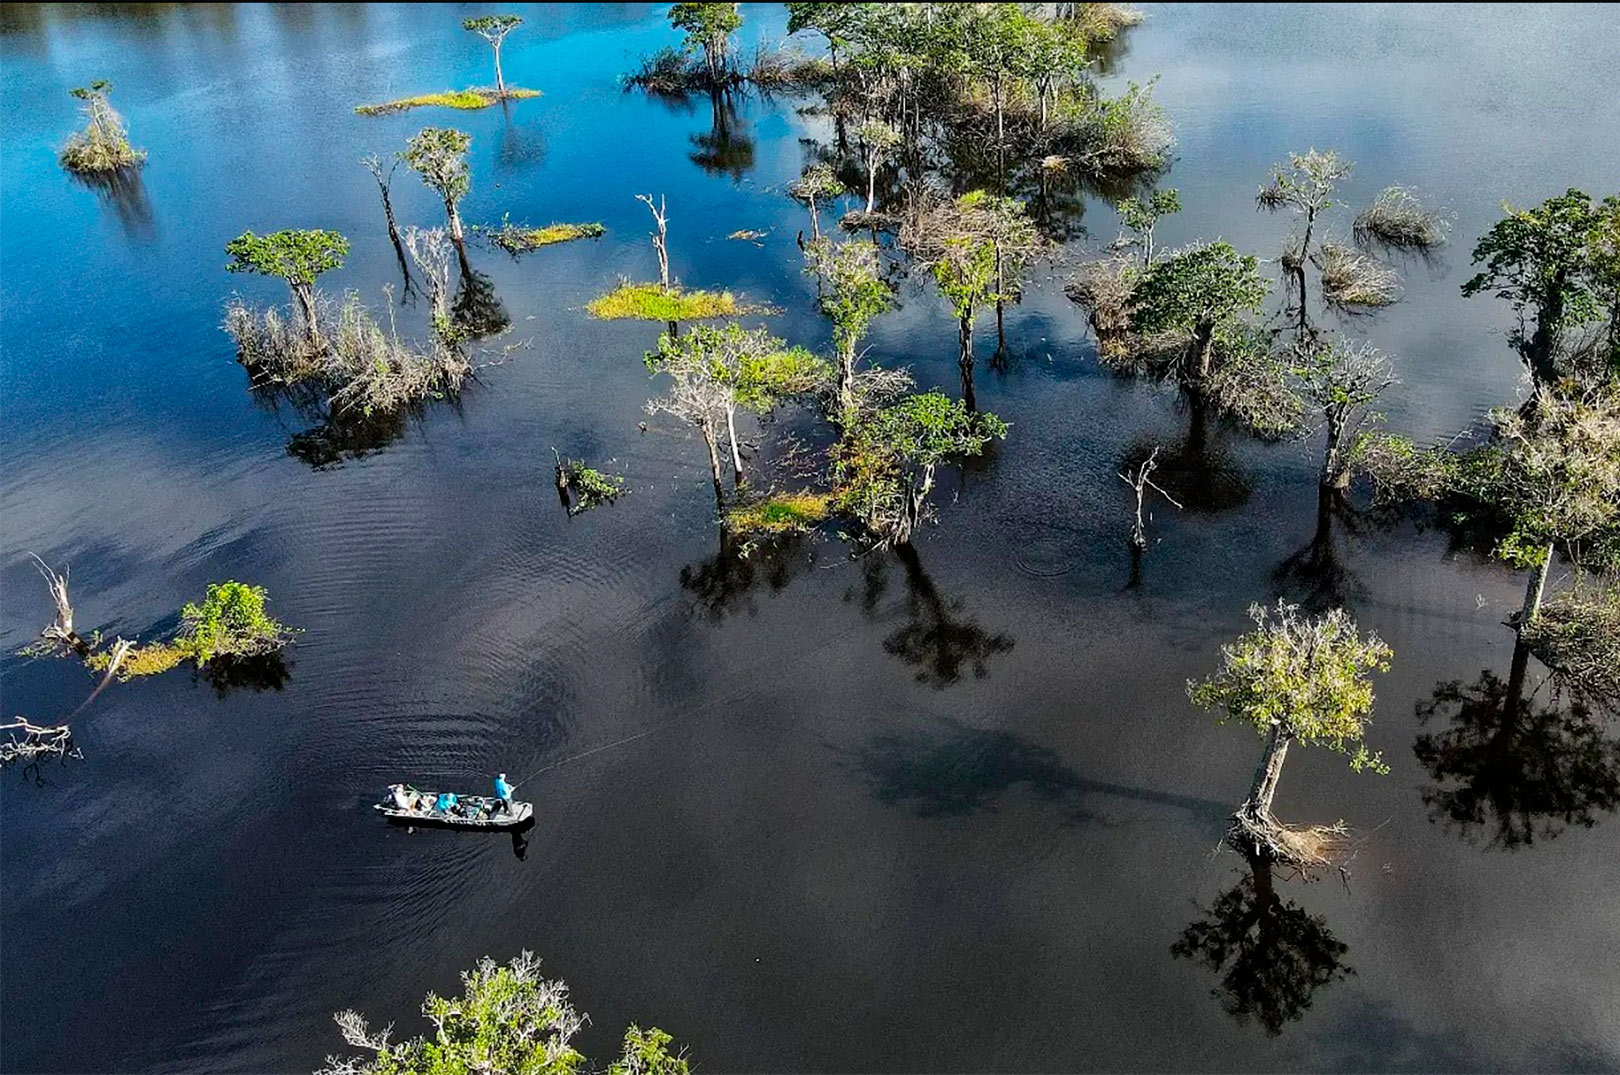 Fiskeriet i Amazonbaas byder ikke blot på eksotiske fisk æ men også fantastiske naturoplevelser.